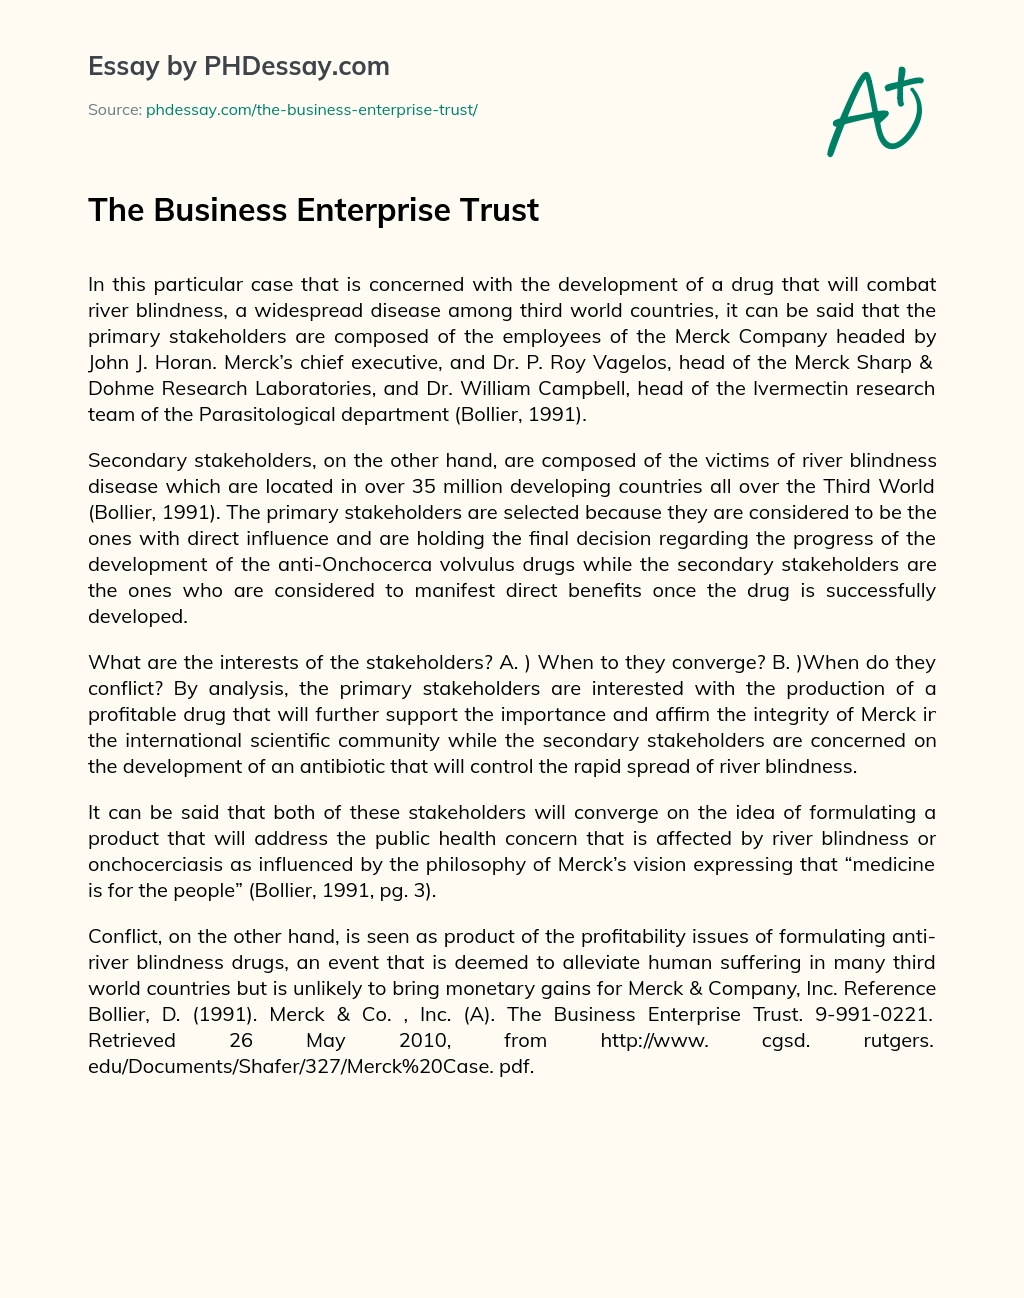 The Business Enterprise Trust essay